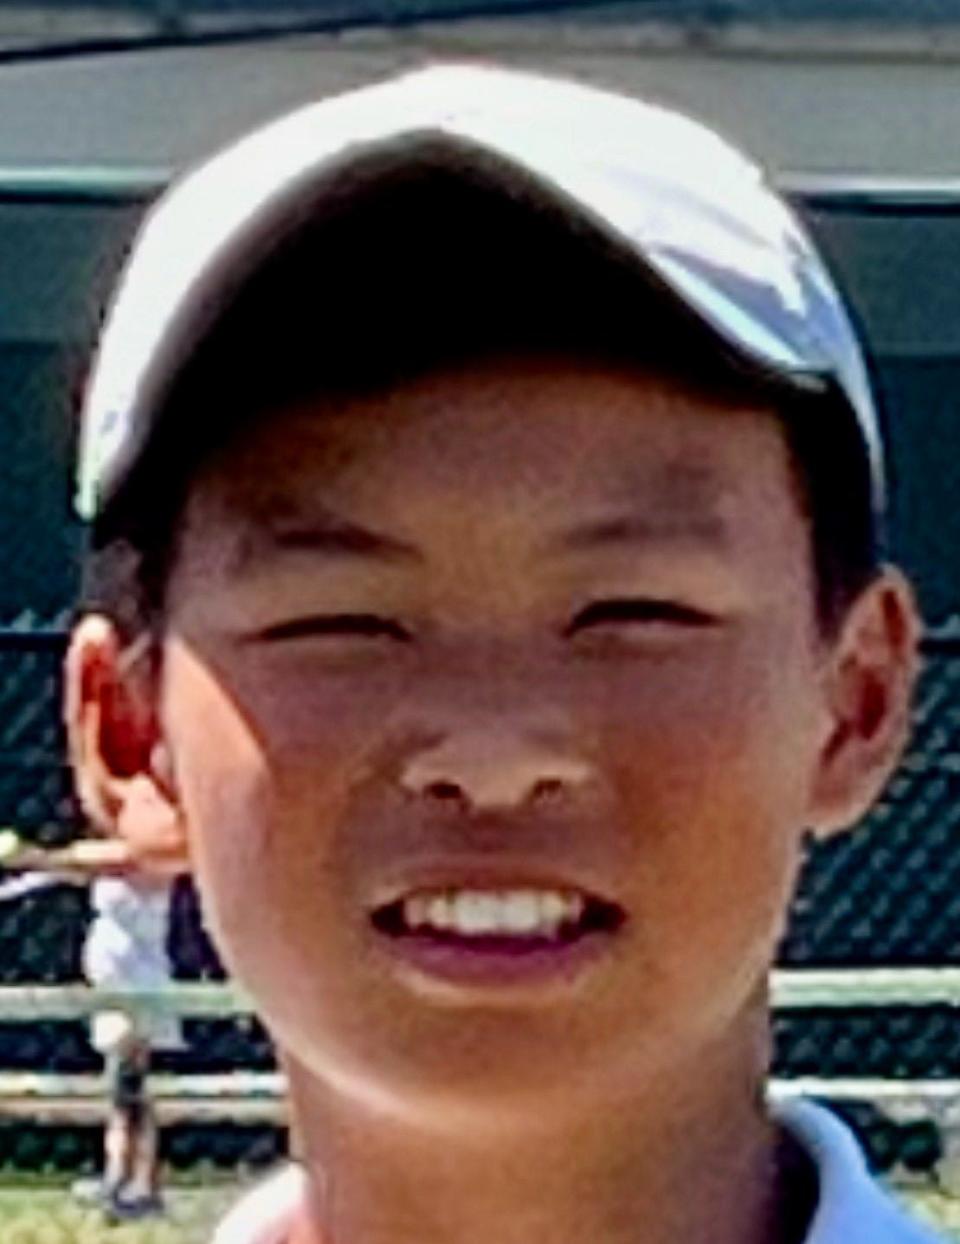 Westborough boys' tennis all-star Kaden Chen.